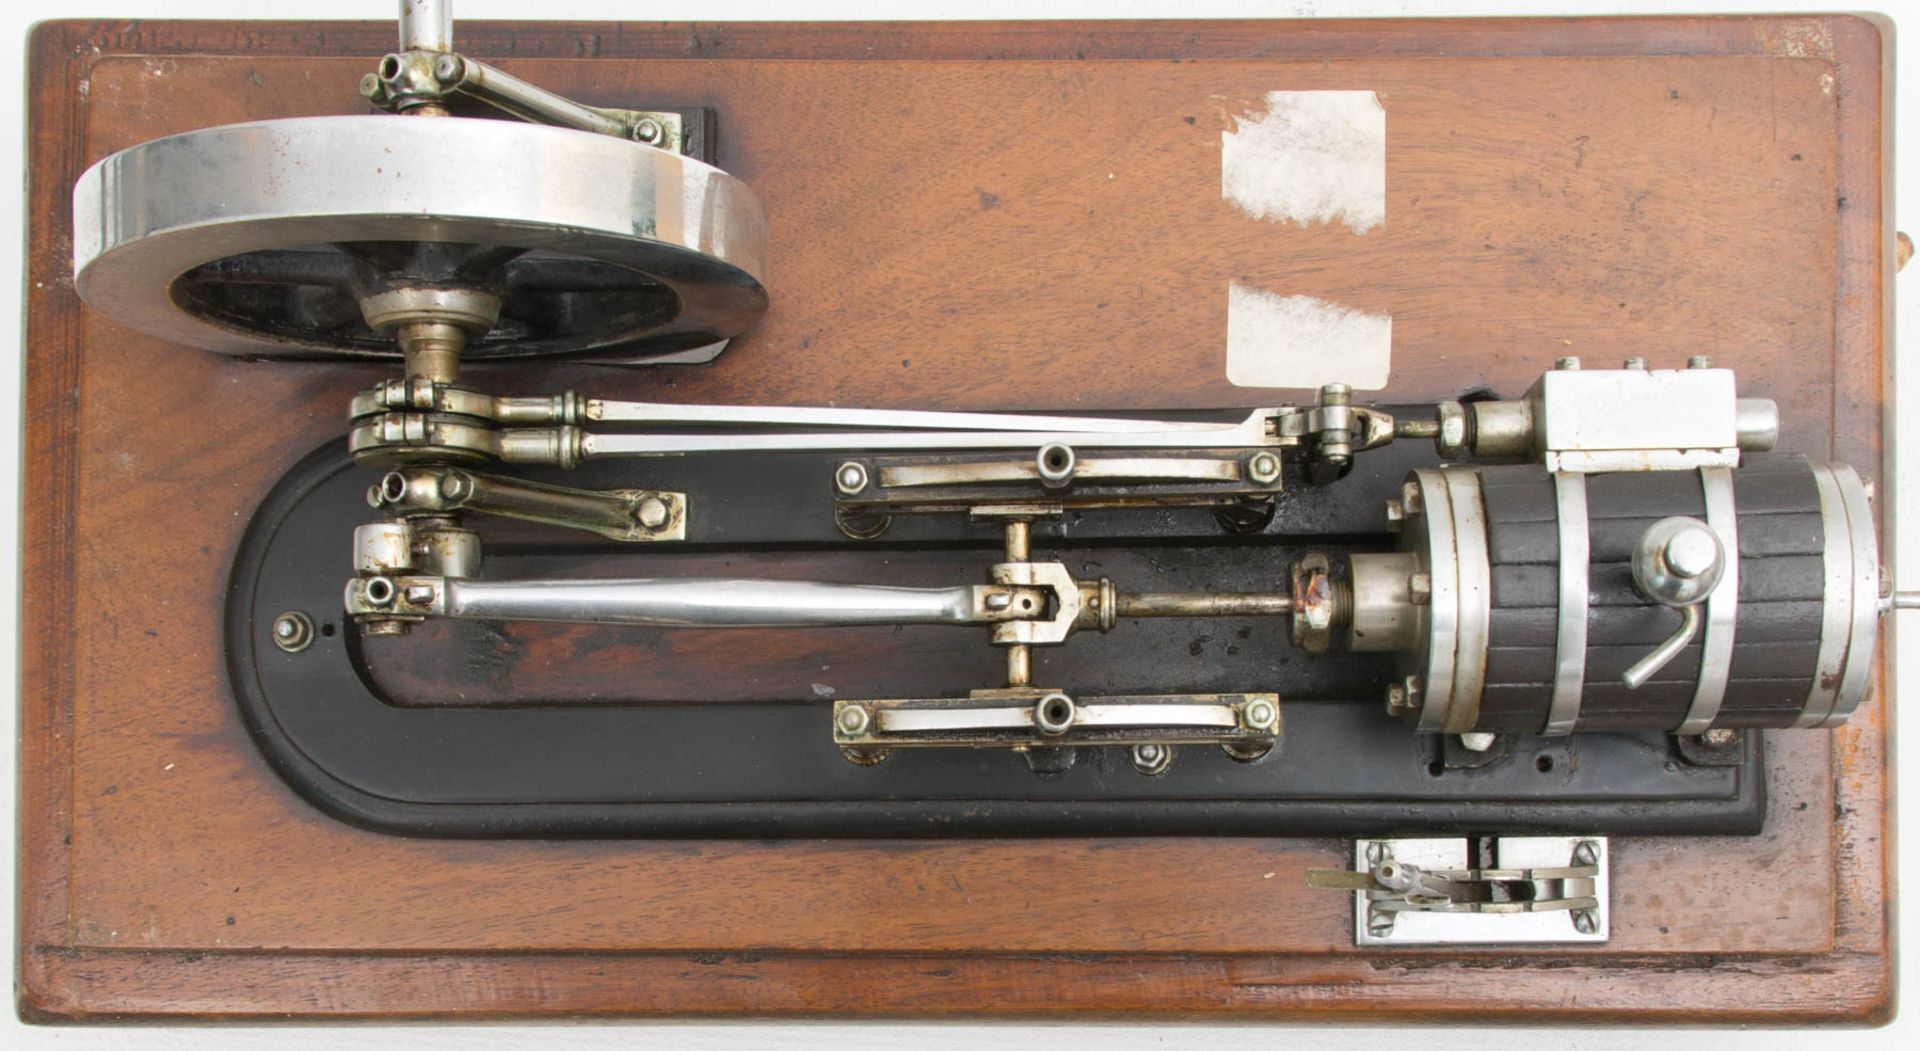 Modell Dampfmaschine in Holzkasten mit Glasscheiben.Kleine Modell-Dampfmaschine in Hol - Image 4 of 7